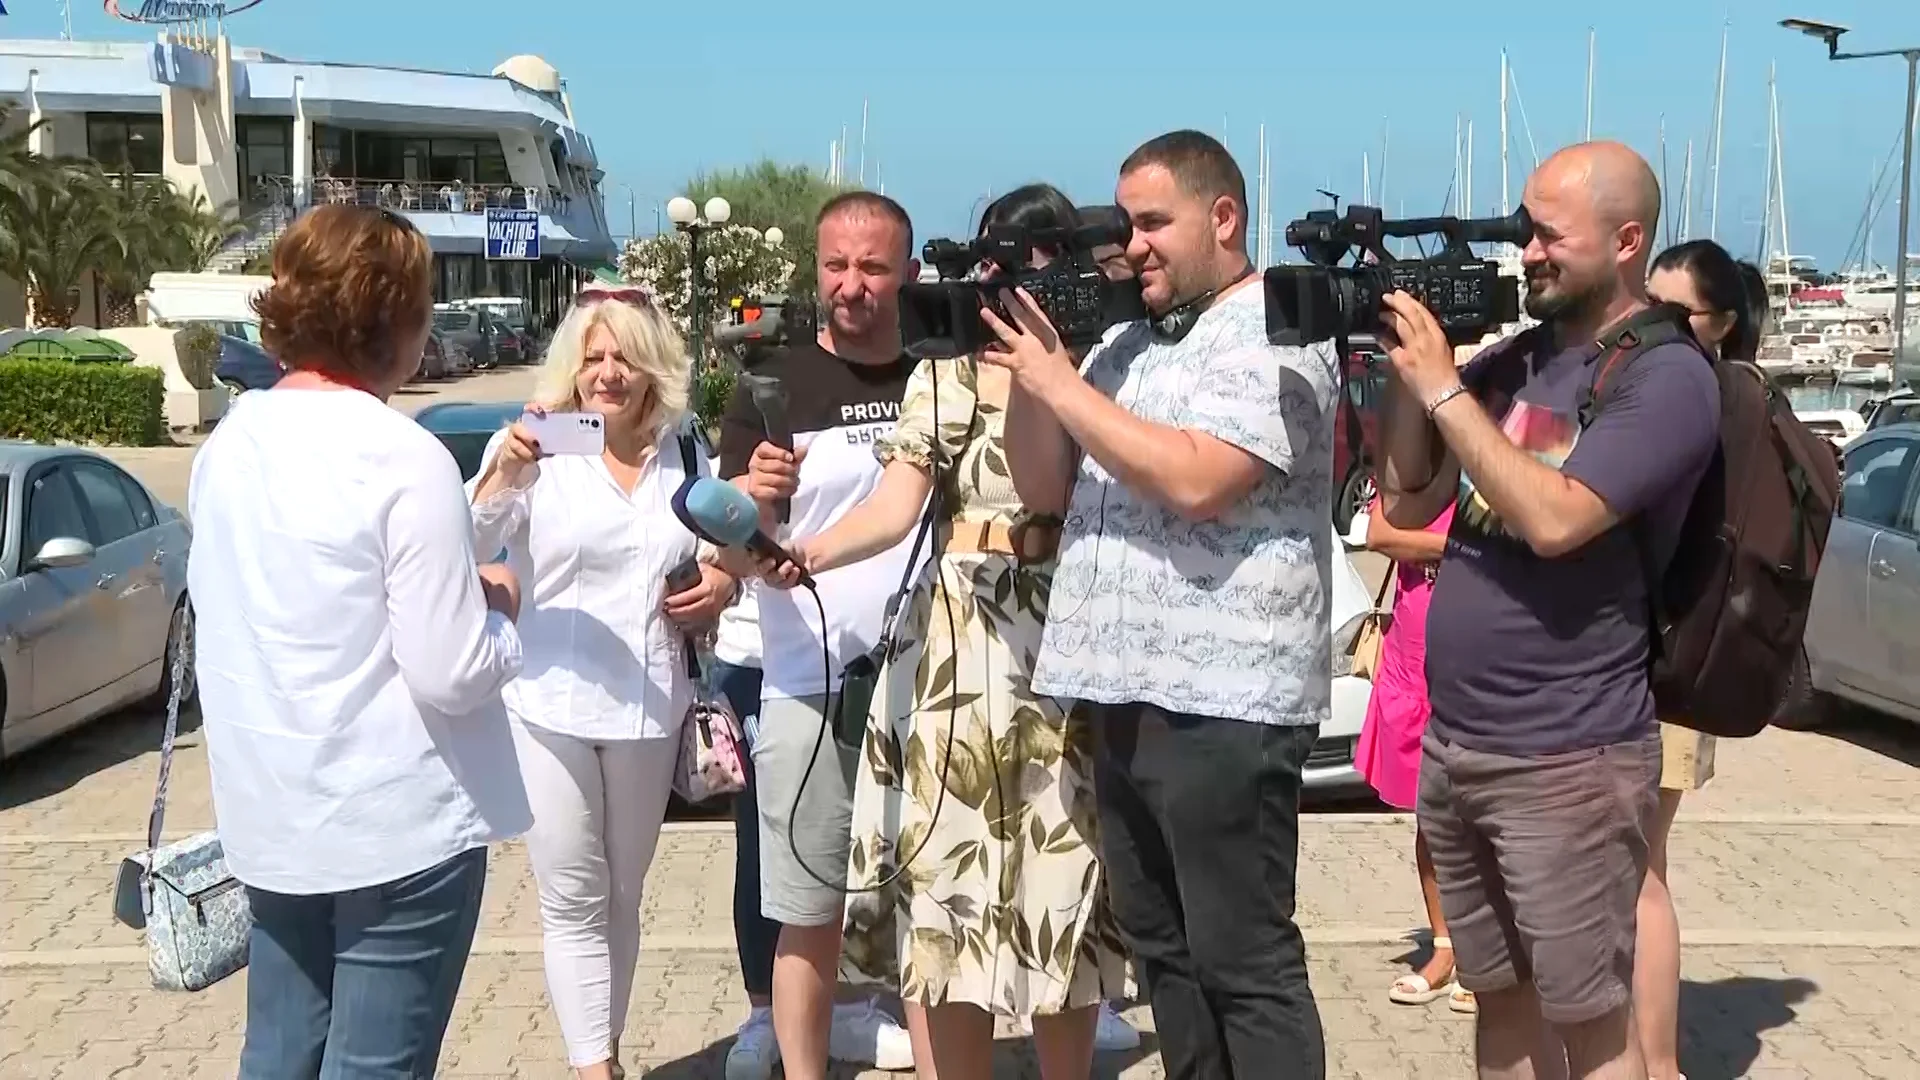 Crnogorski novinari uživali u novoj turističkoj turi: “Ovakve ture čine da ne zaboravimo našu tradiciju”